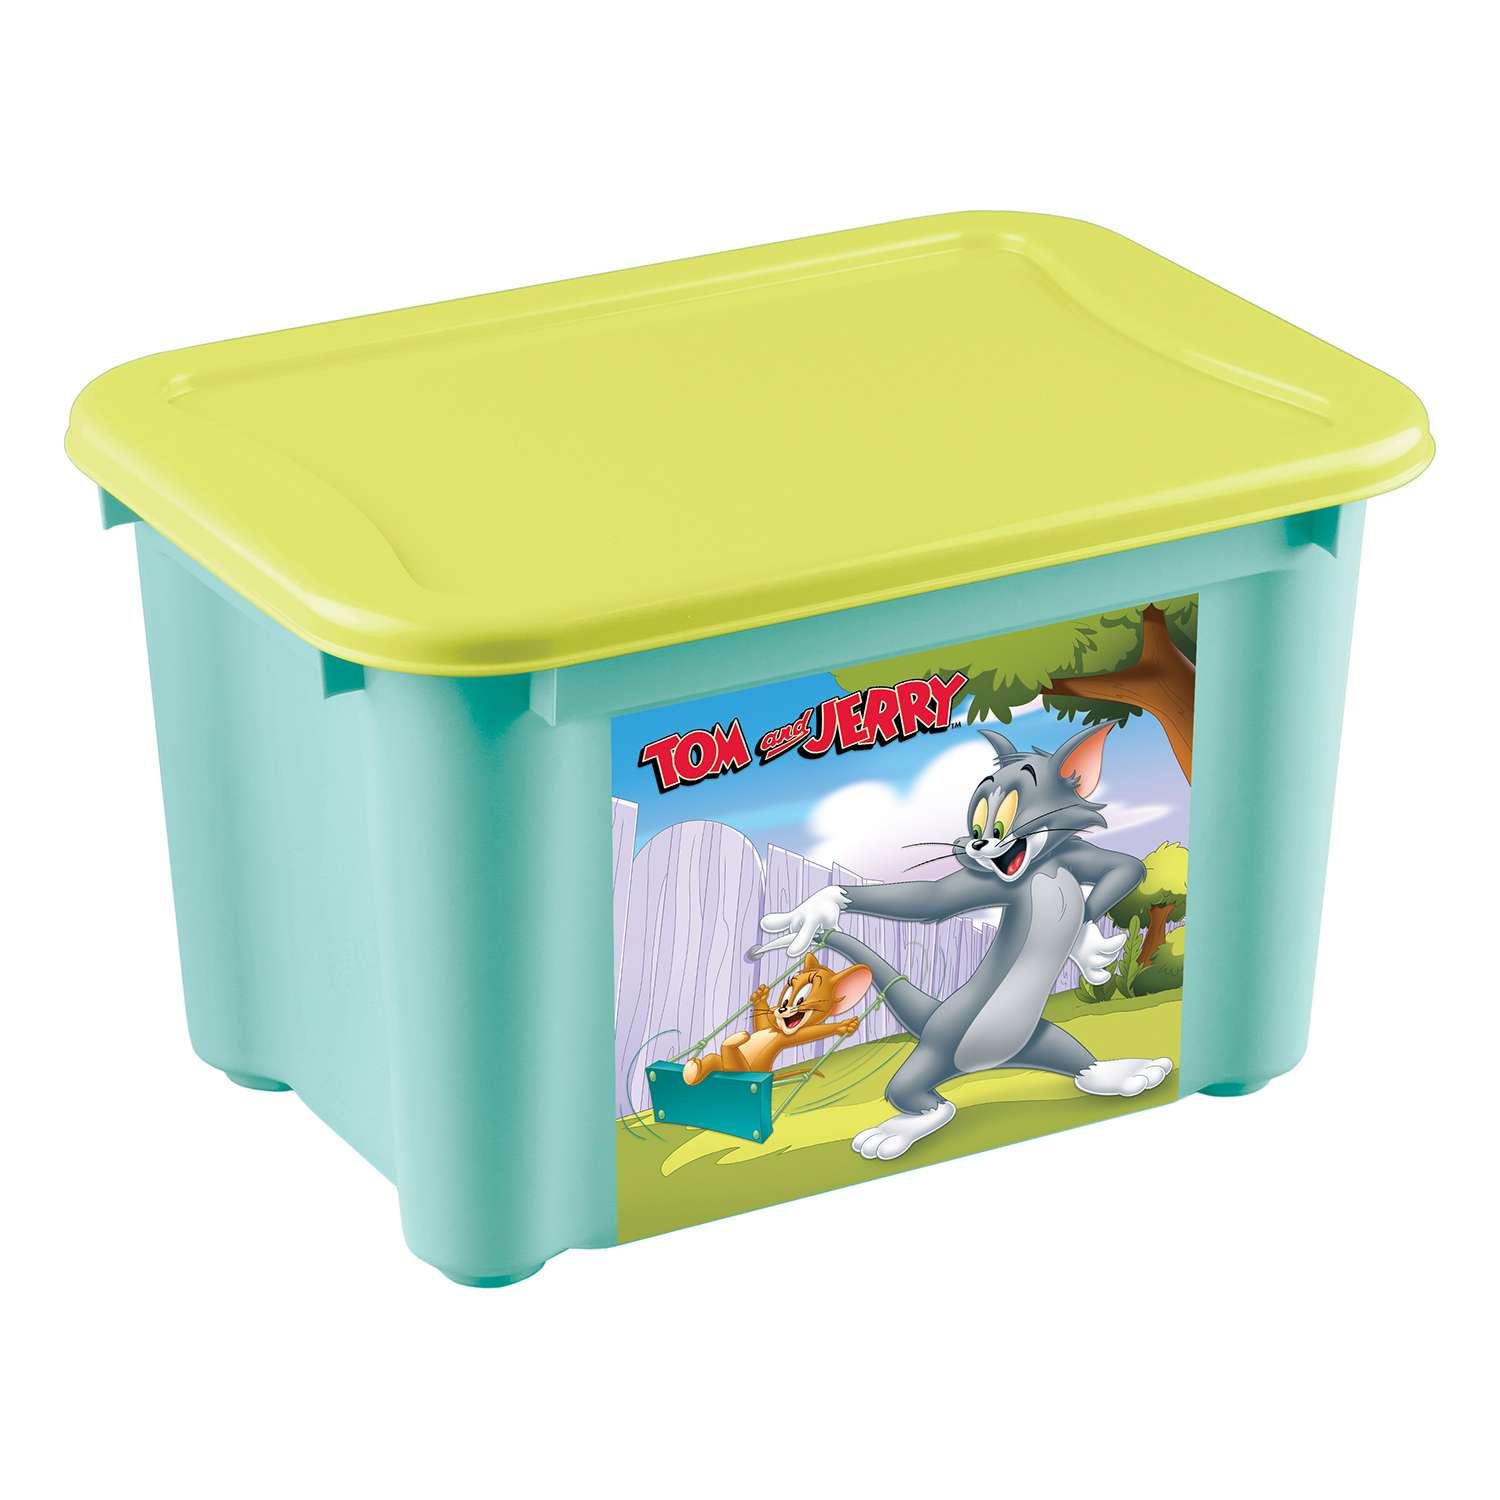 Ящик Пластишка Tom and Jerry S универсальный с аппликацией Бирюзовый - фото 1